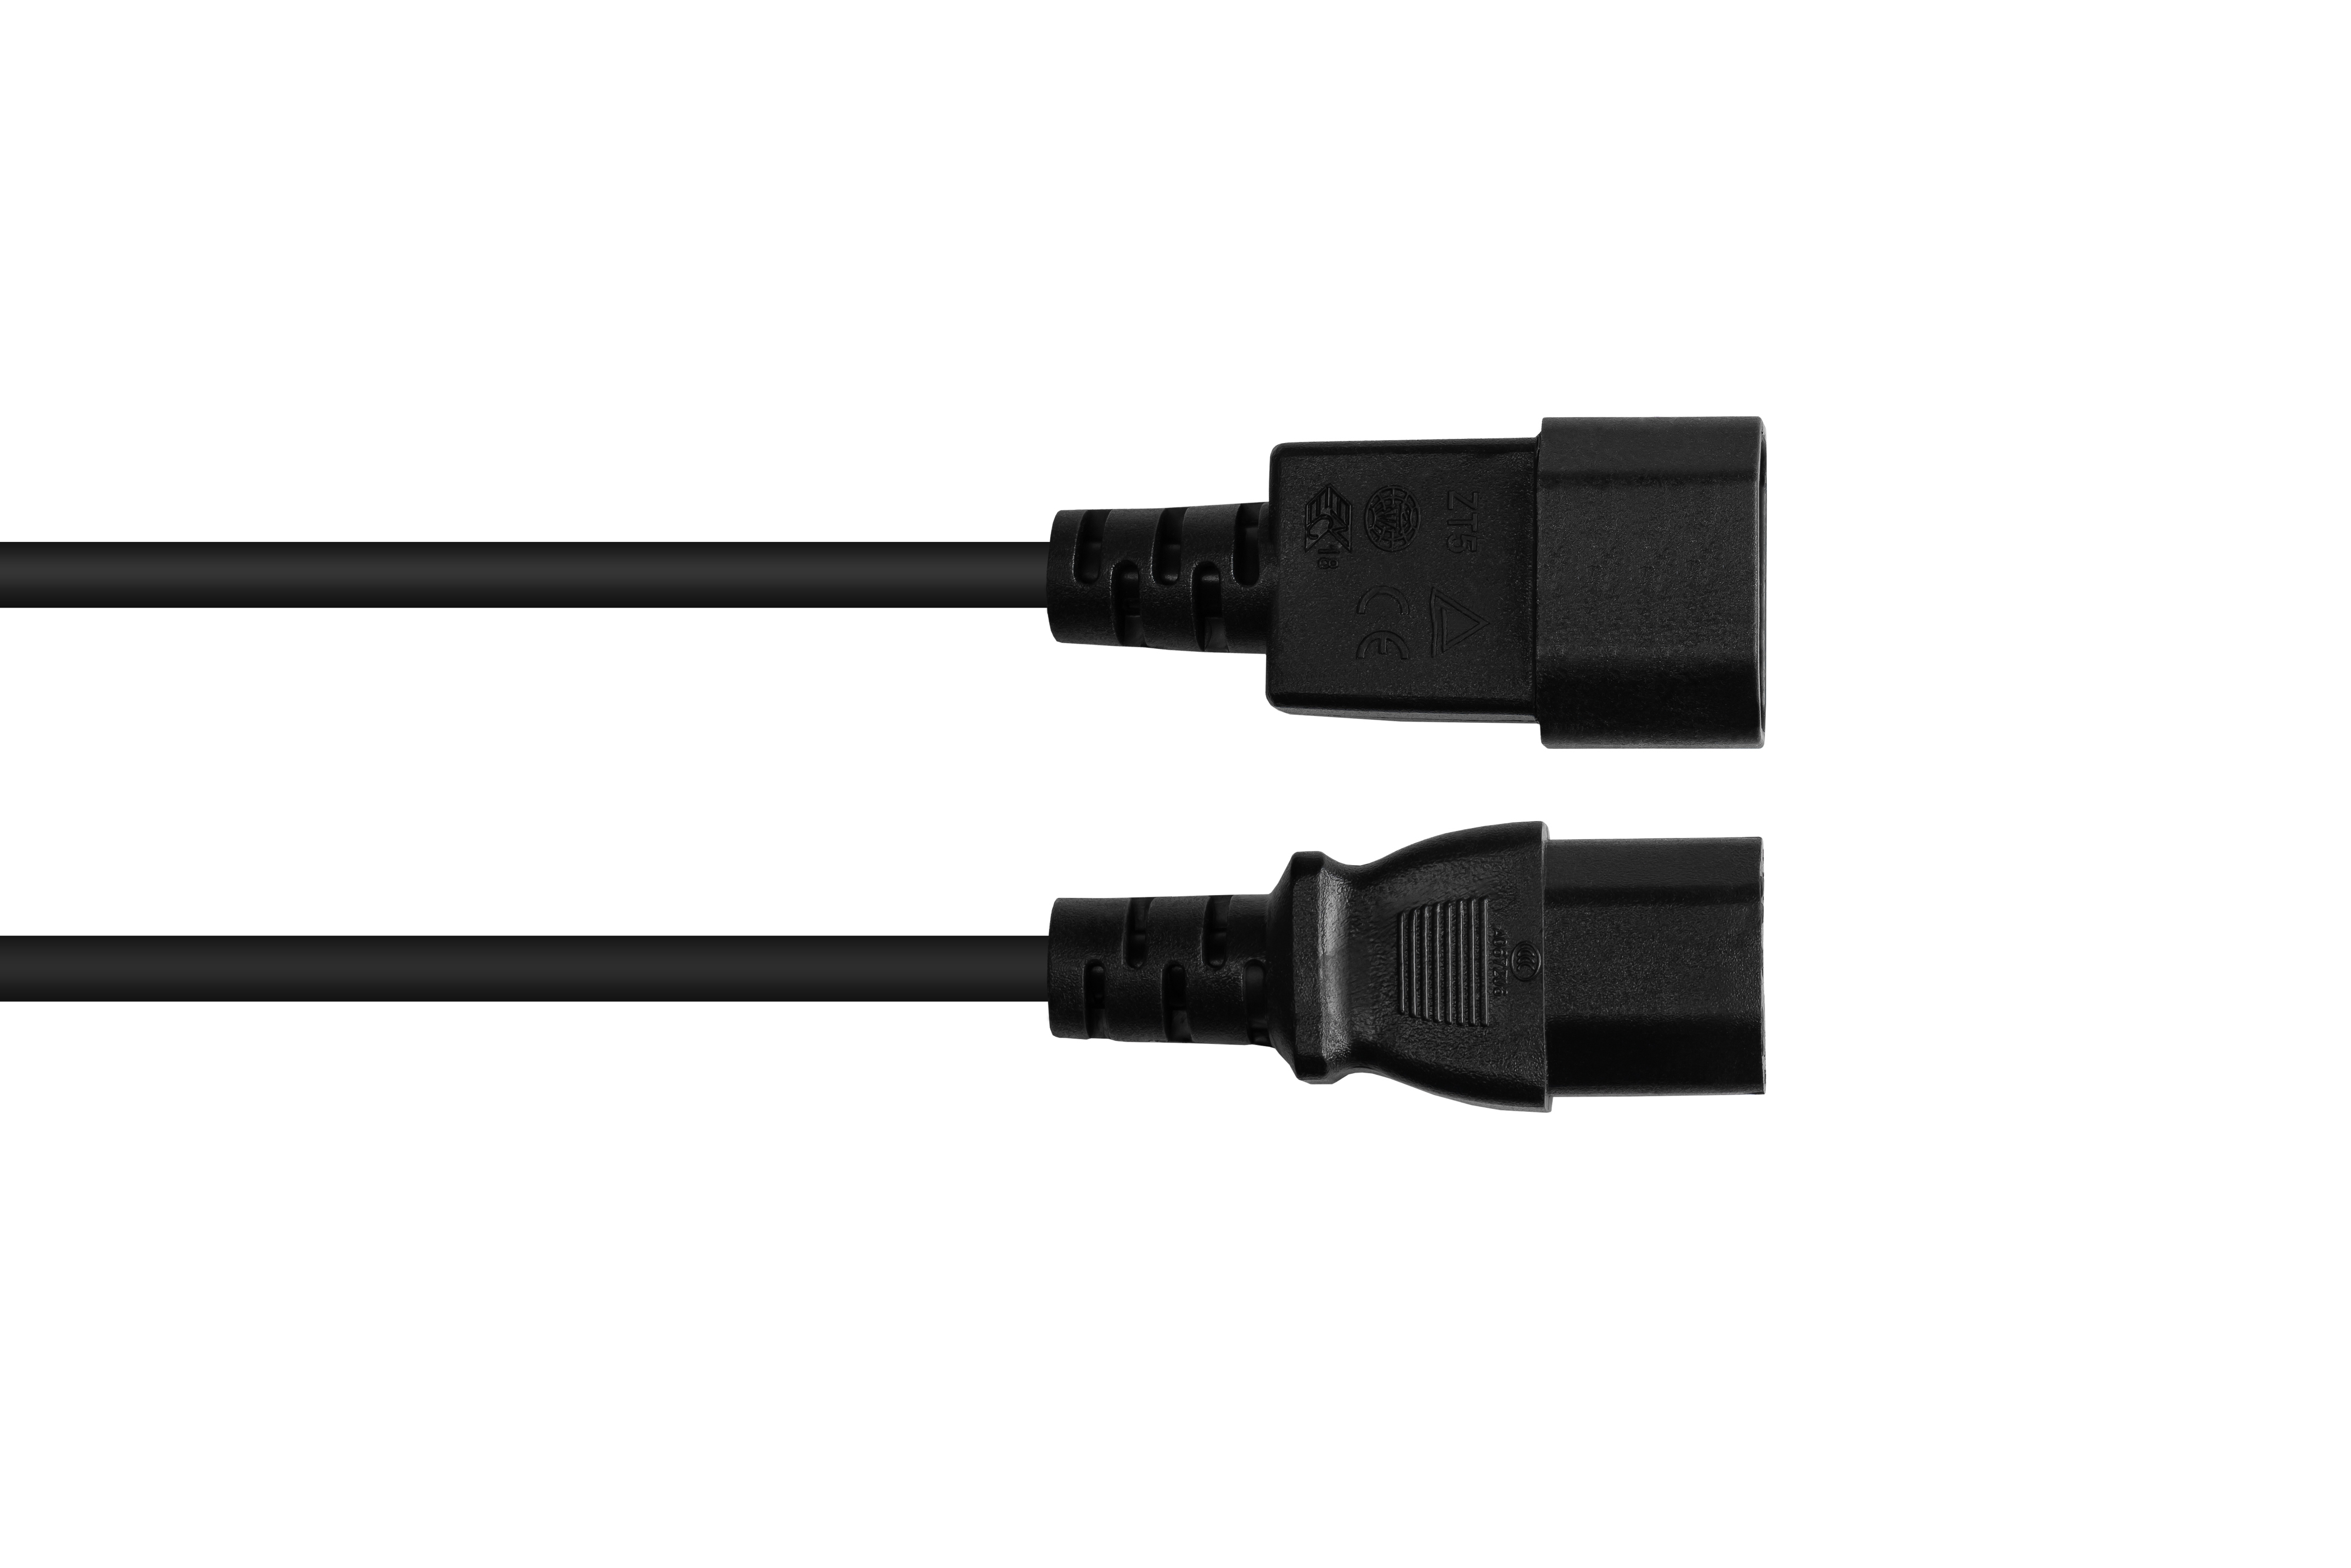 CONNECTIONS C15 GOOD (gerade), mm² schwarz schwarz, C14 an Kaltgeräte-Warmgeräte-Verbindungskabel (gerade) Stromkabel, 1.00